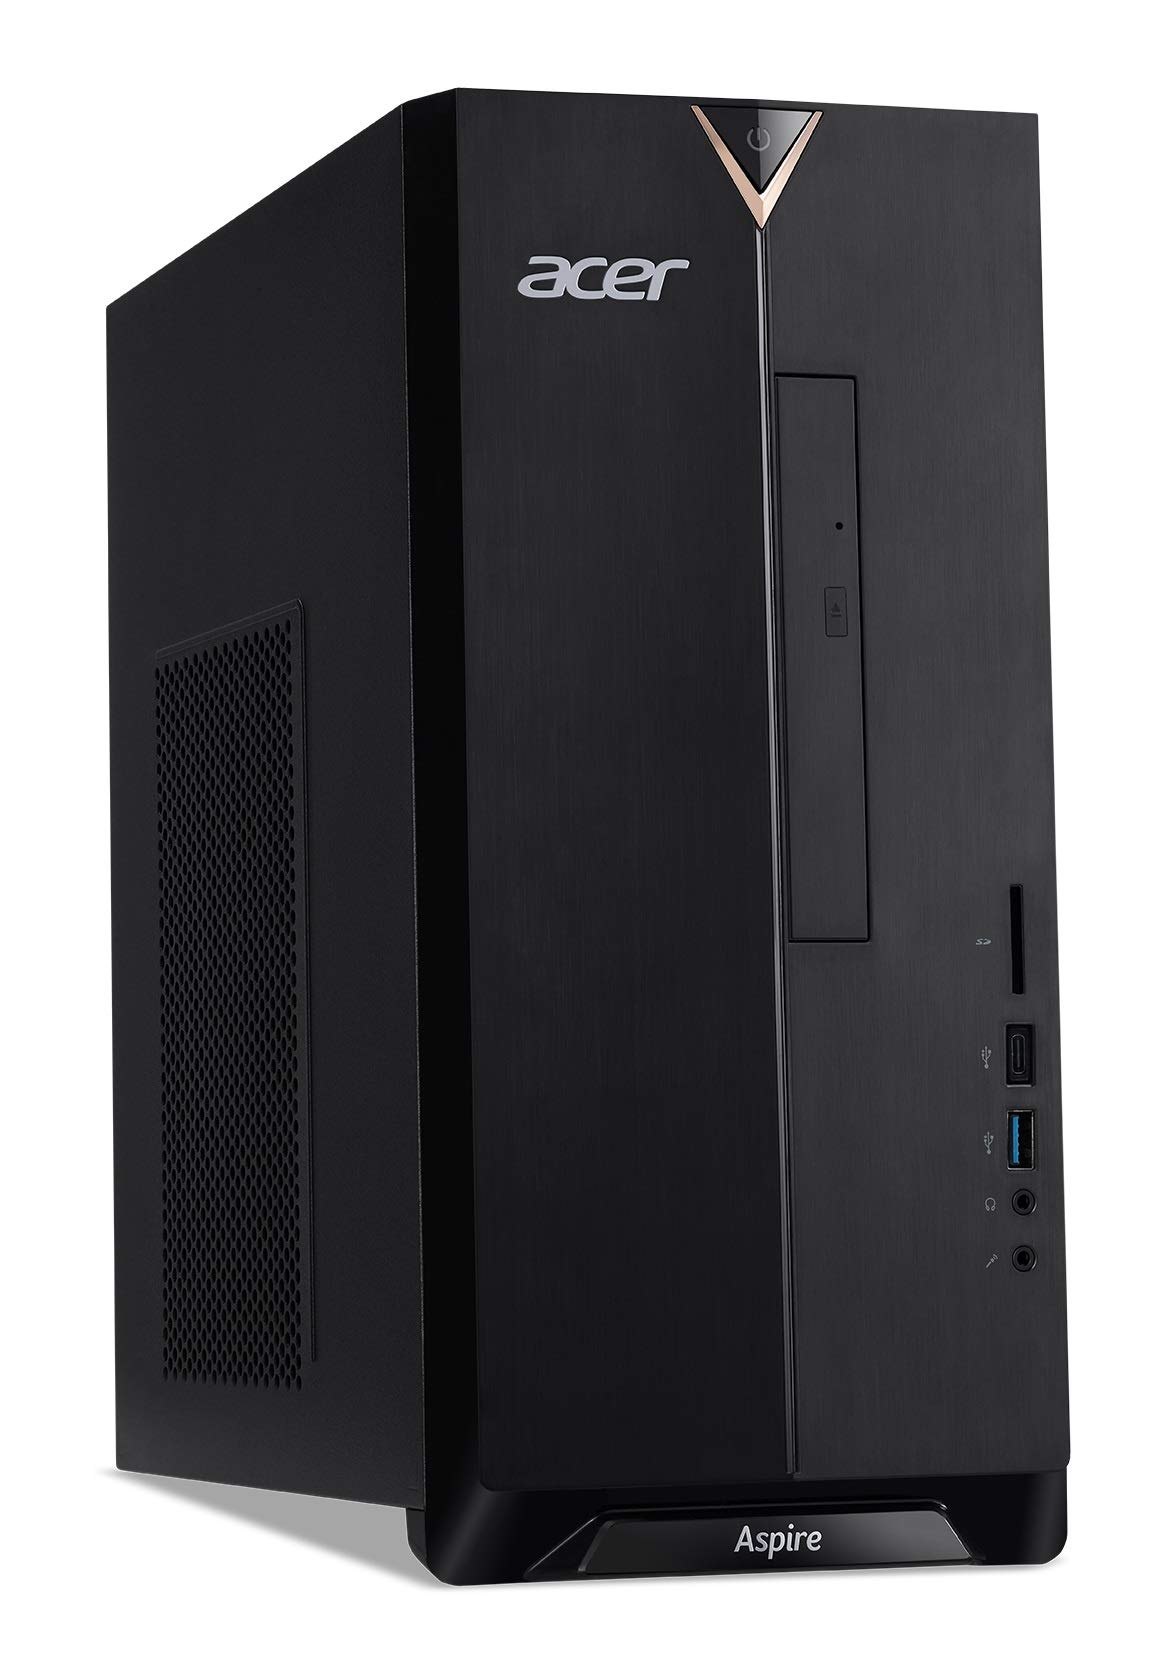 Acer Aspire TC-895-UR11 Desktop, 10th Gen Intel Core i5-10400 6-Core Processor, 12GB 2666MHz DDR4, 512GB NVMe M.2 SSD, 8X DVD, 802.11ax WiFi 6, USB 3.2 Type C, Windows 10 Professional